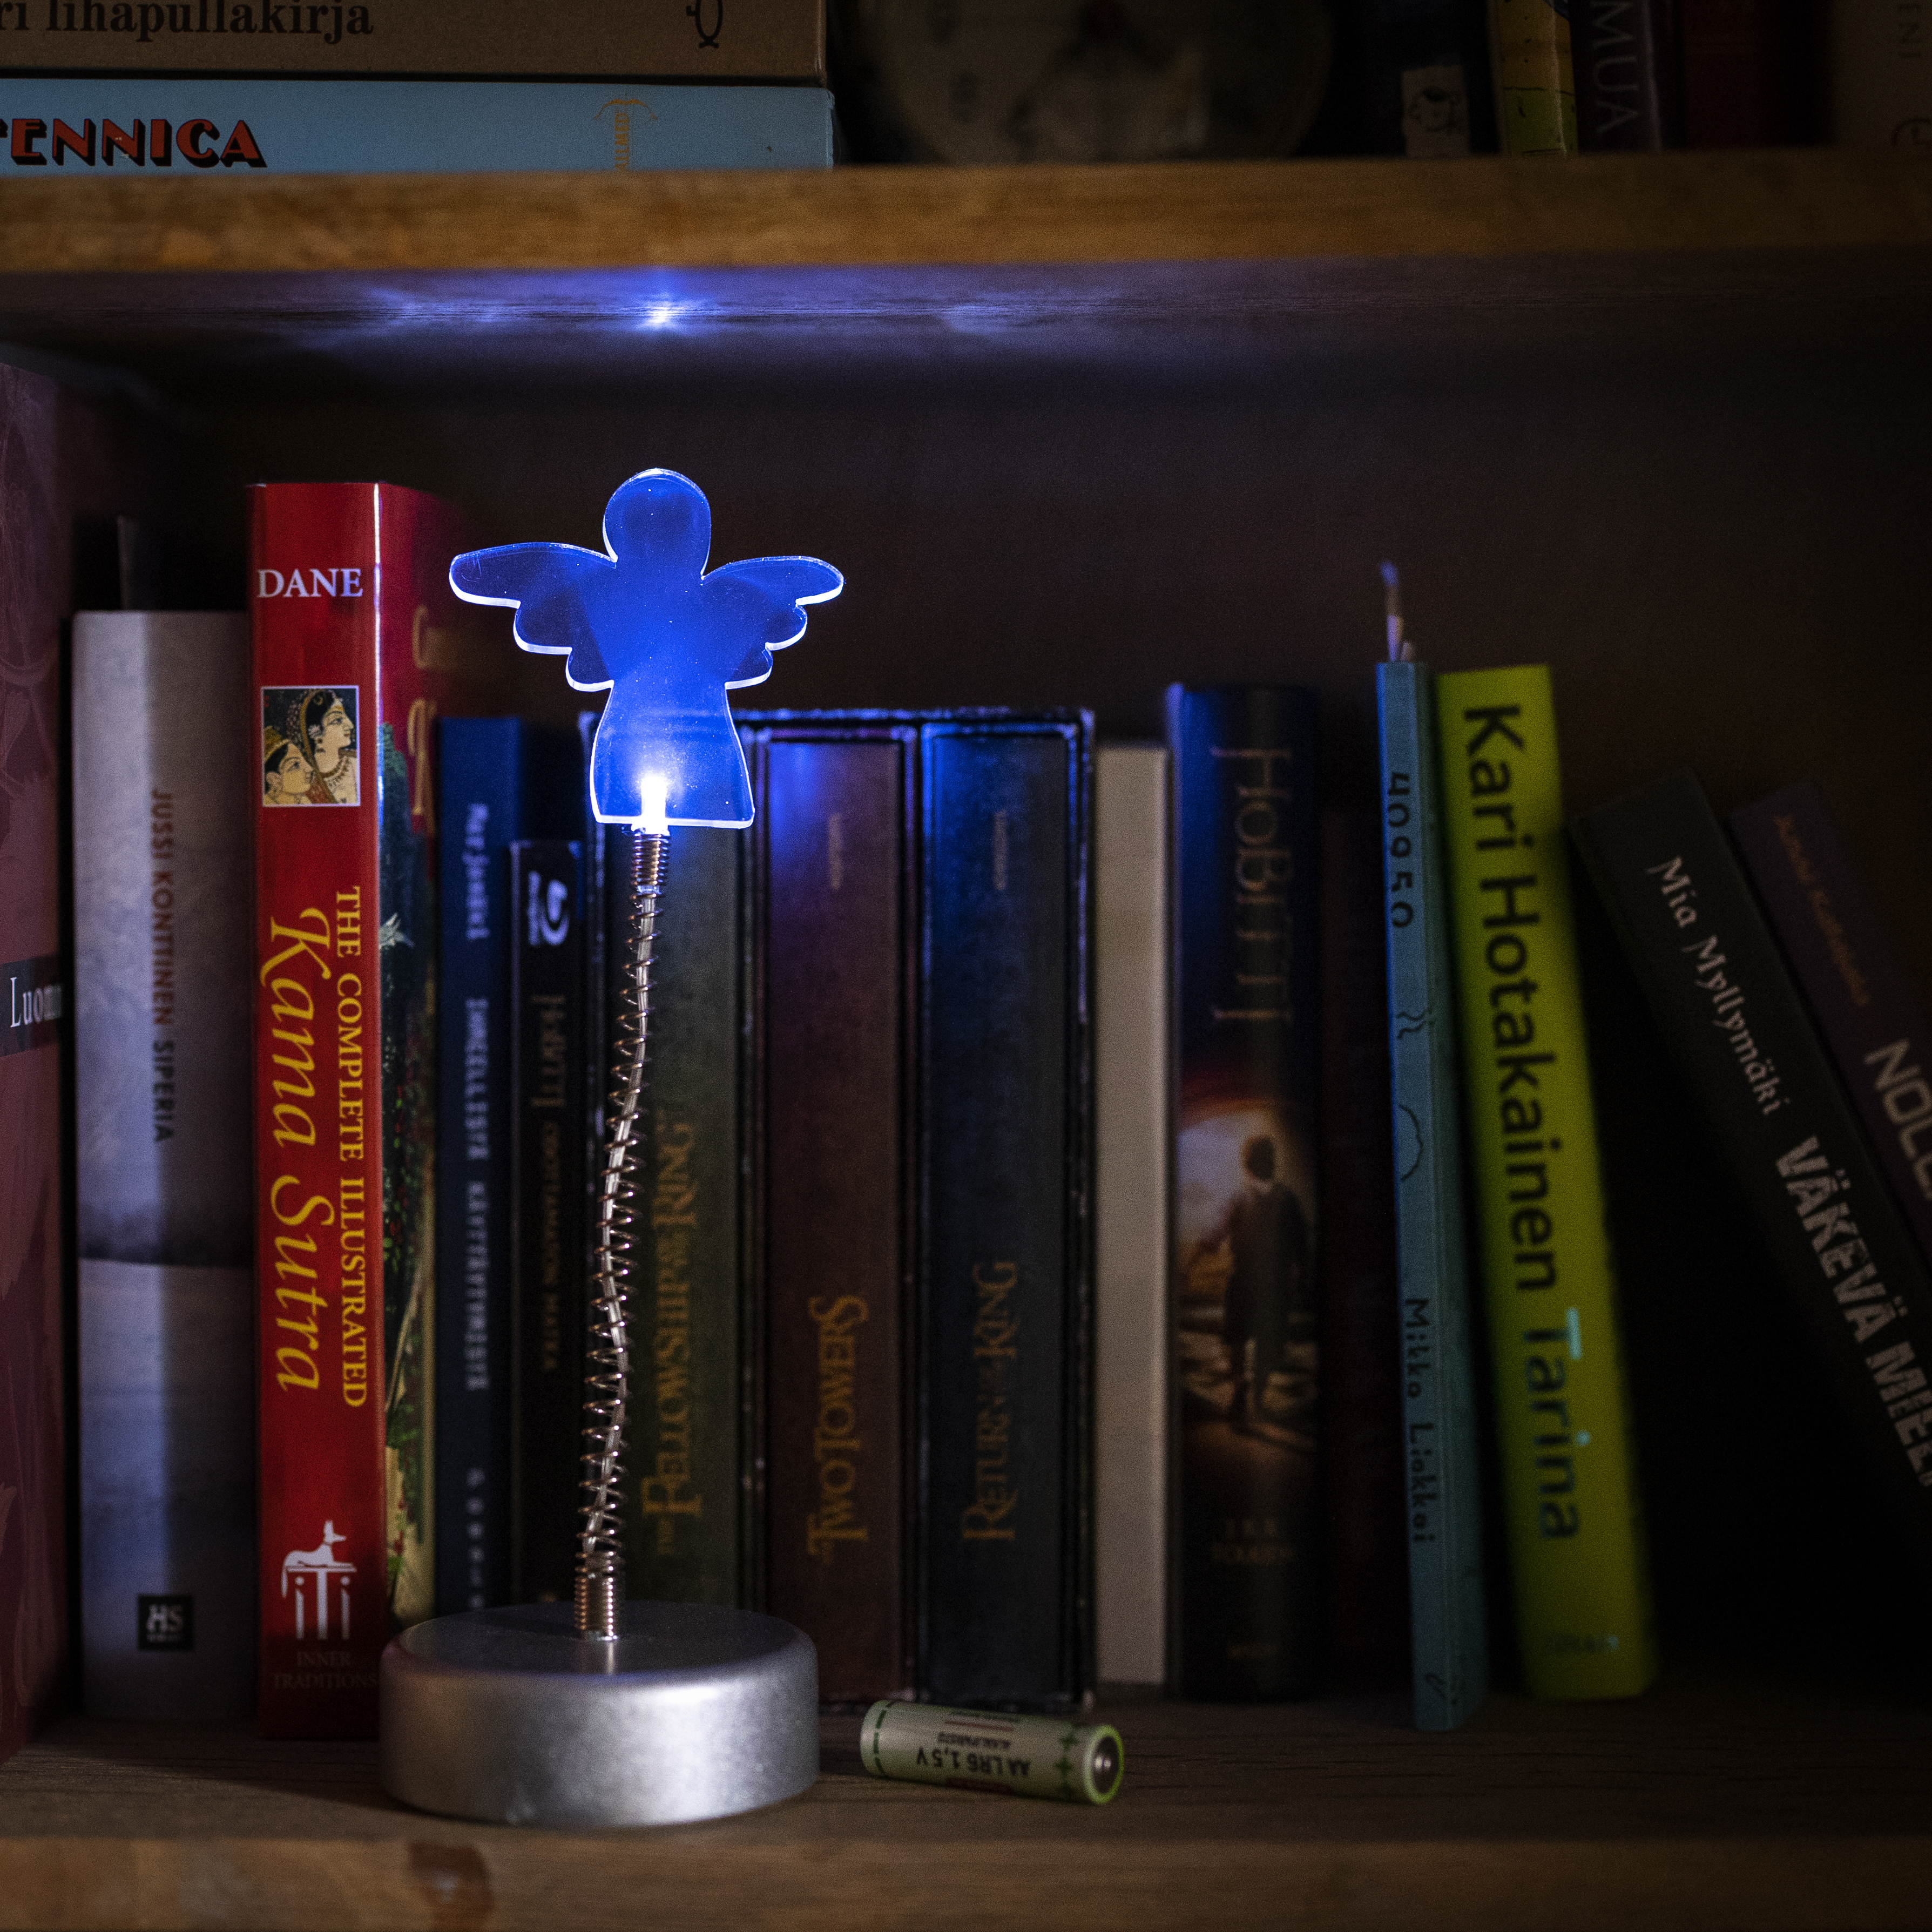 Enkelivalo loistaa sinisenä, takana näkyy kirjoja ja valon vieressä AA-paristo.